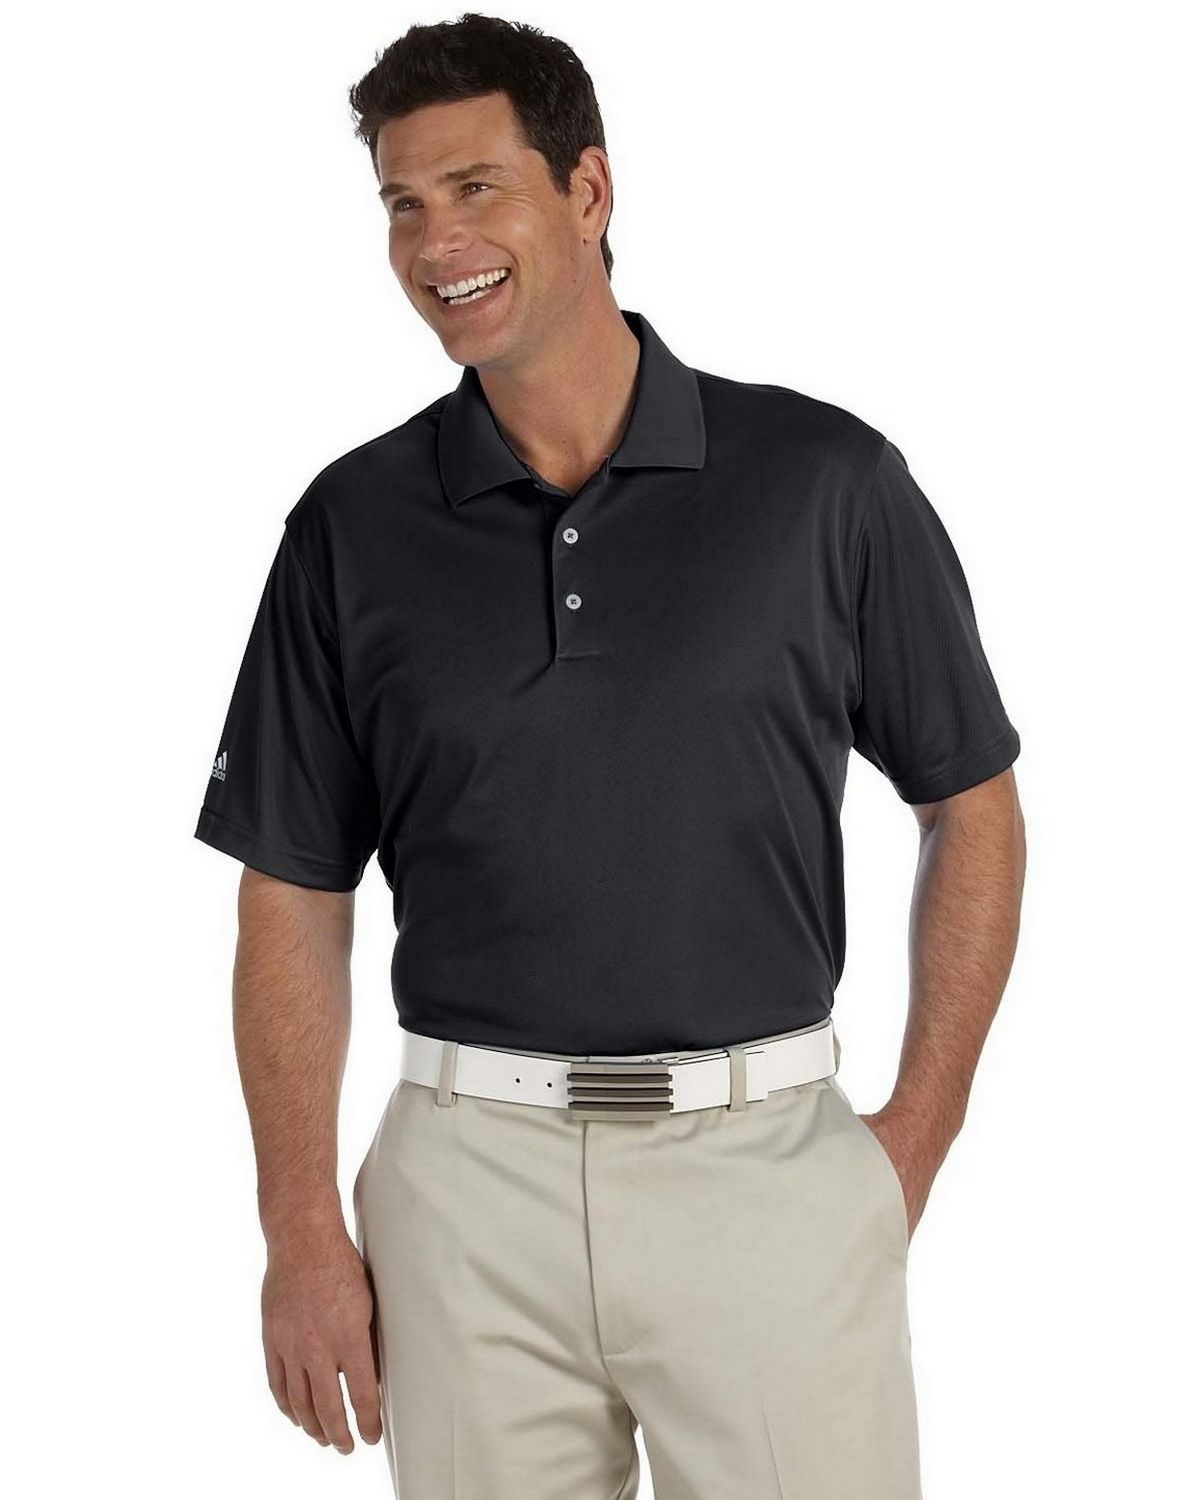 adidas golf sleeves